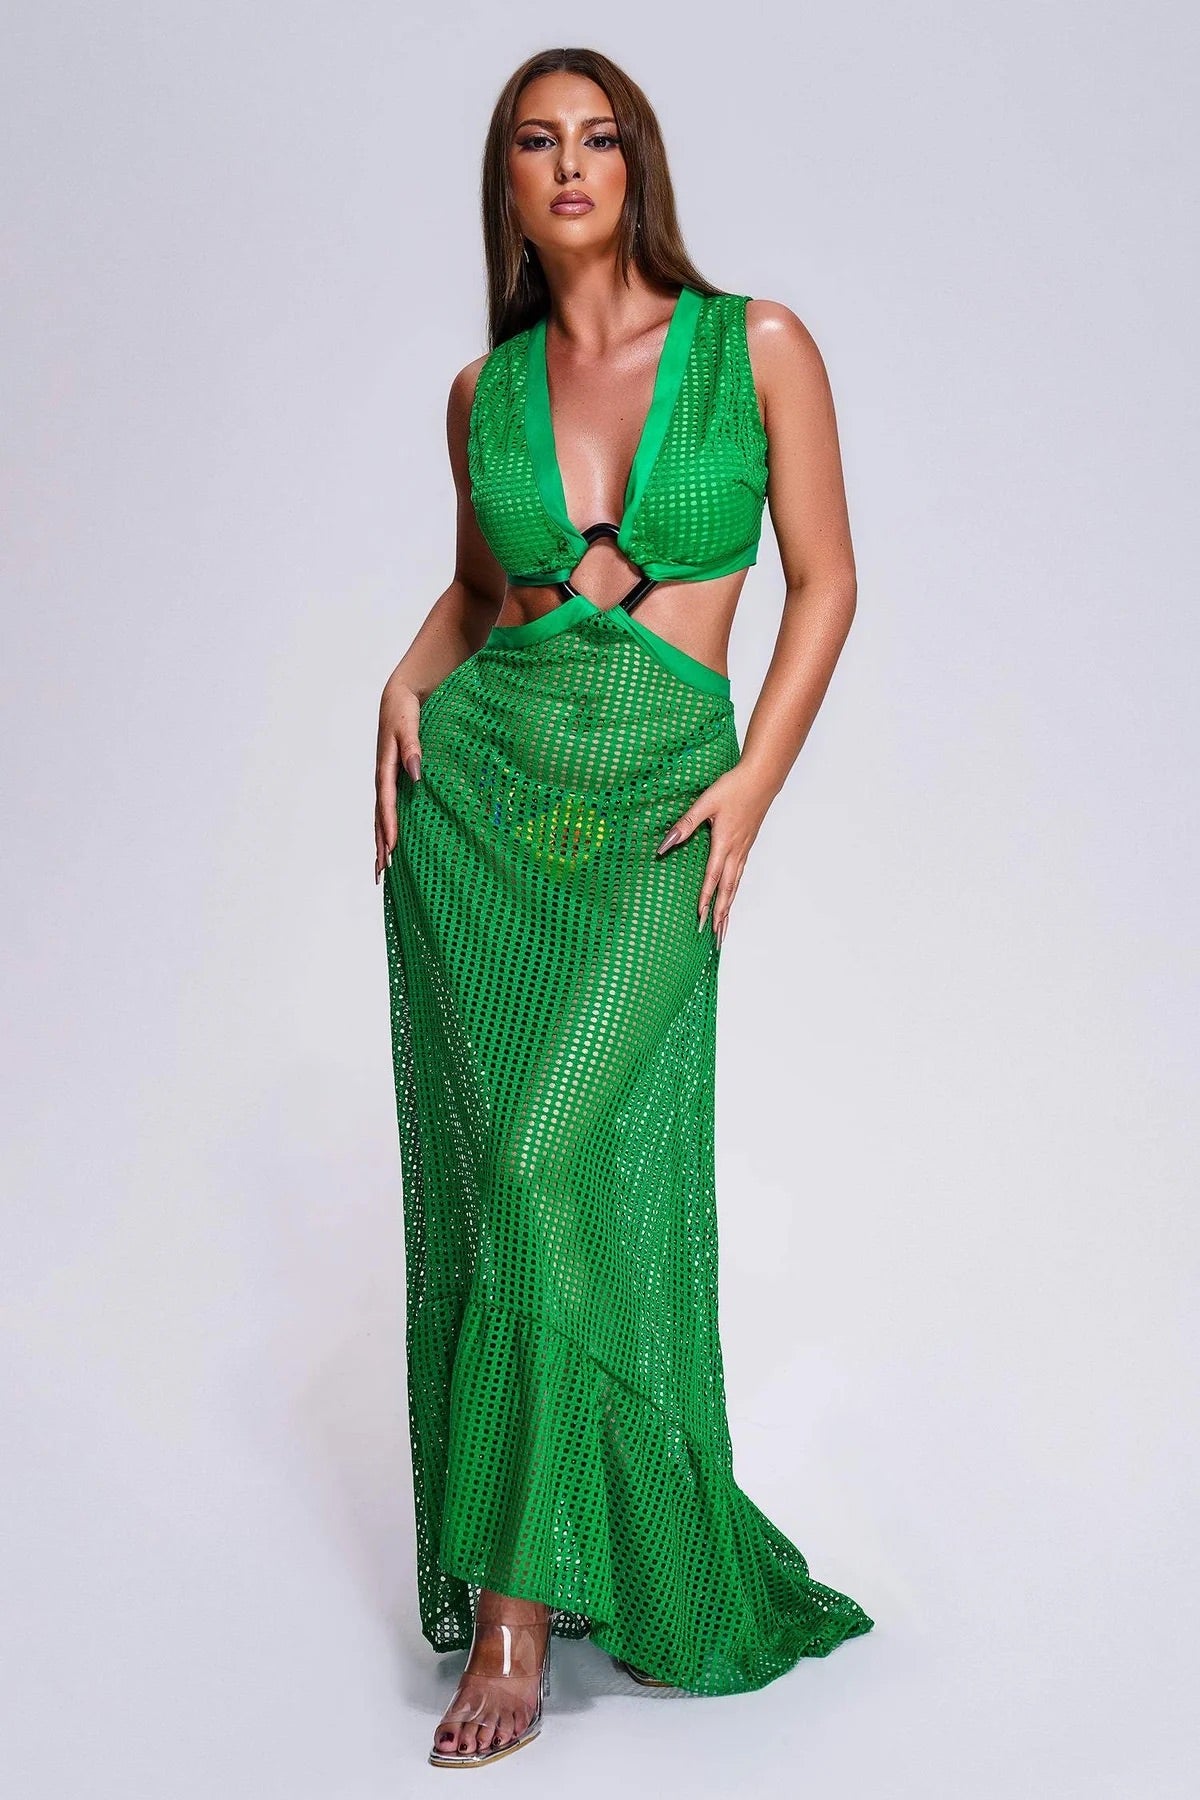 Дамска рокля Green Mesh-Thedresscode